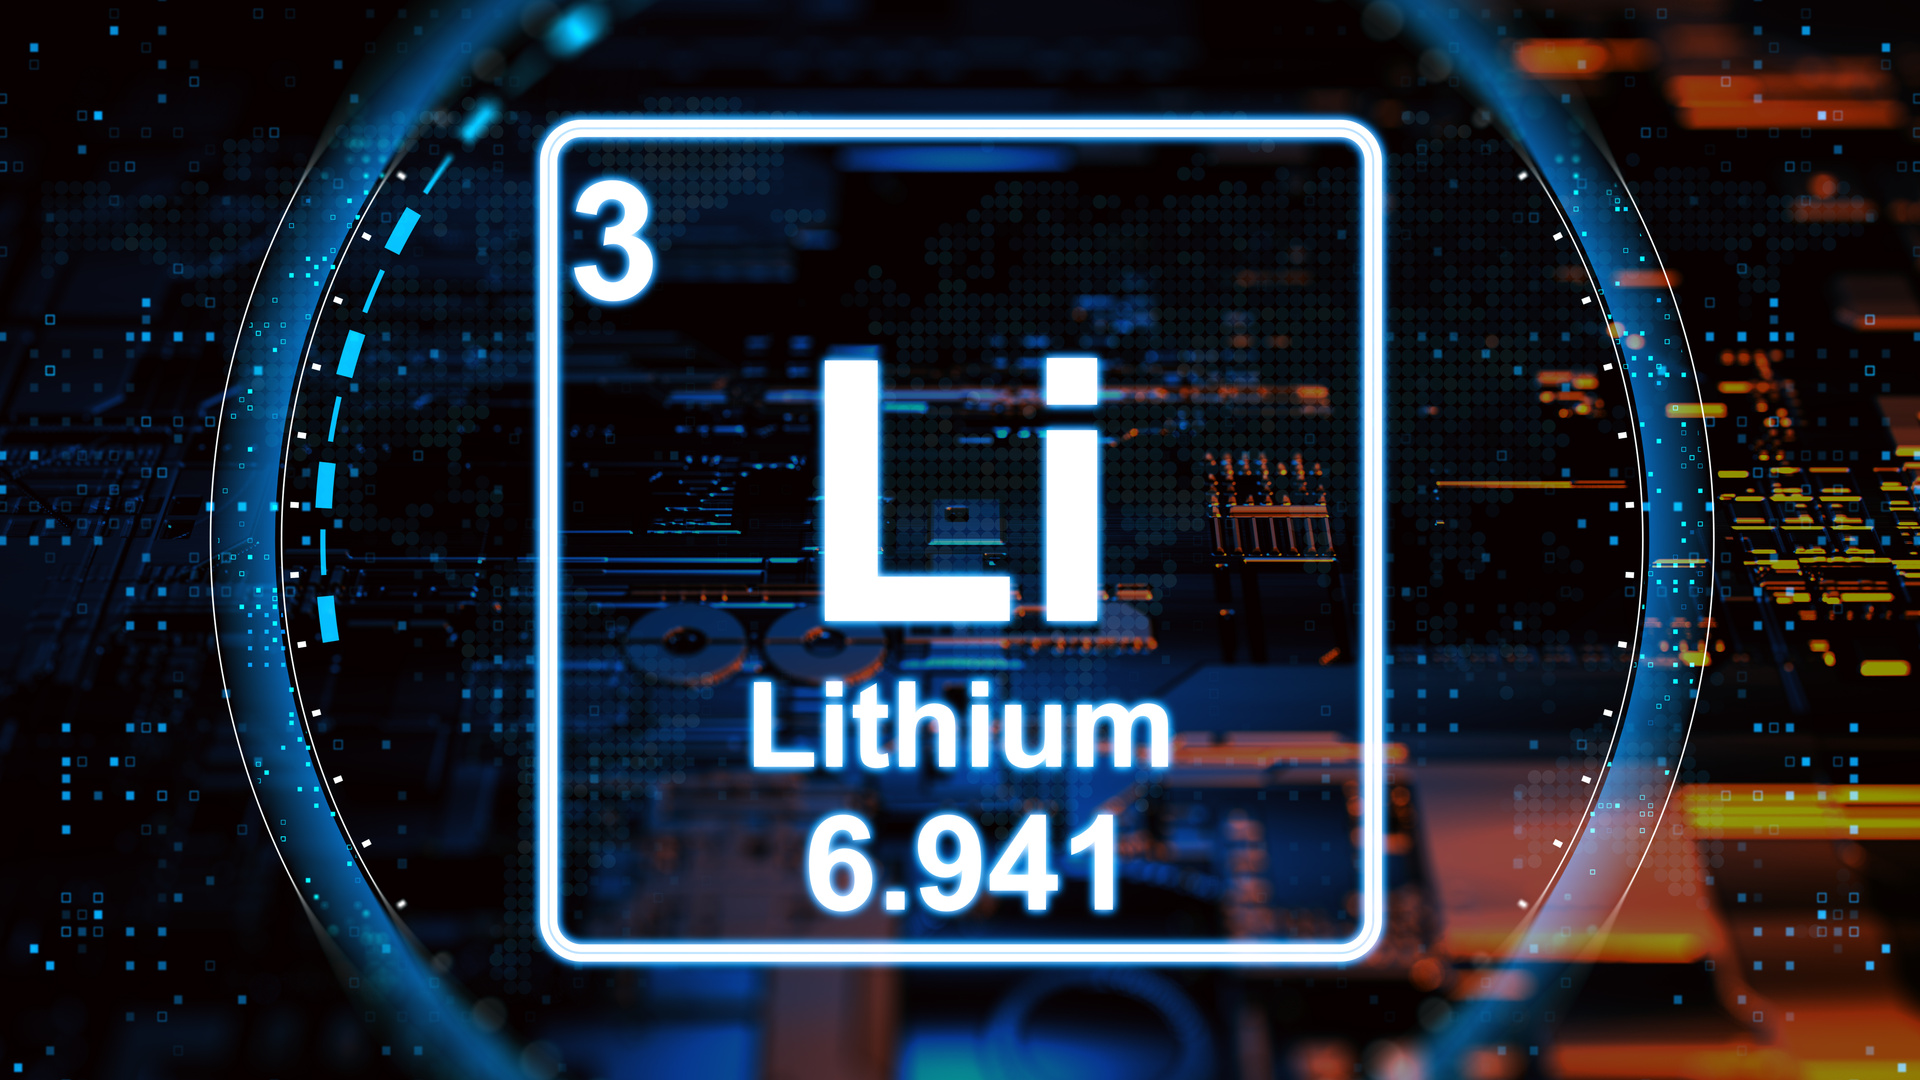 Lithium concept